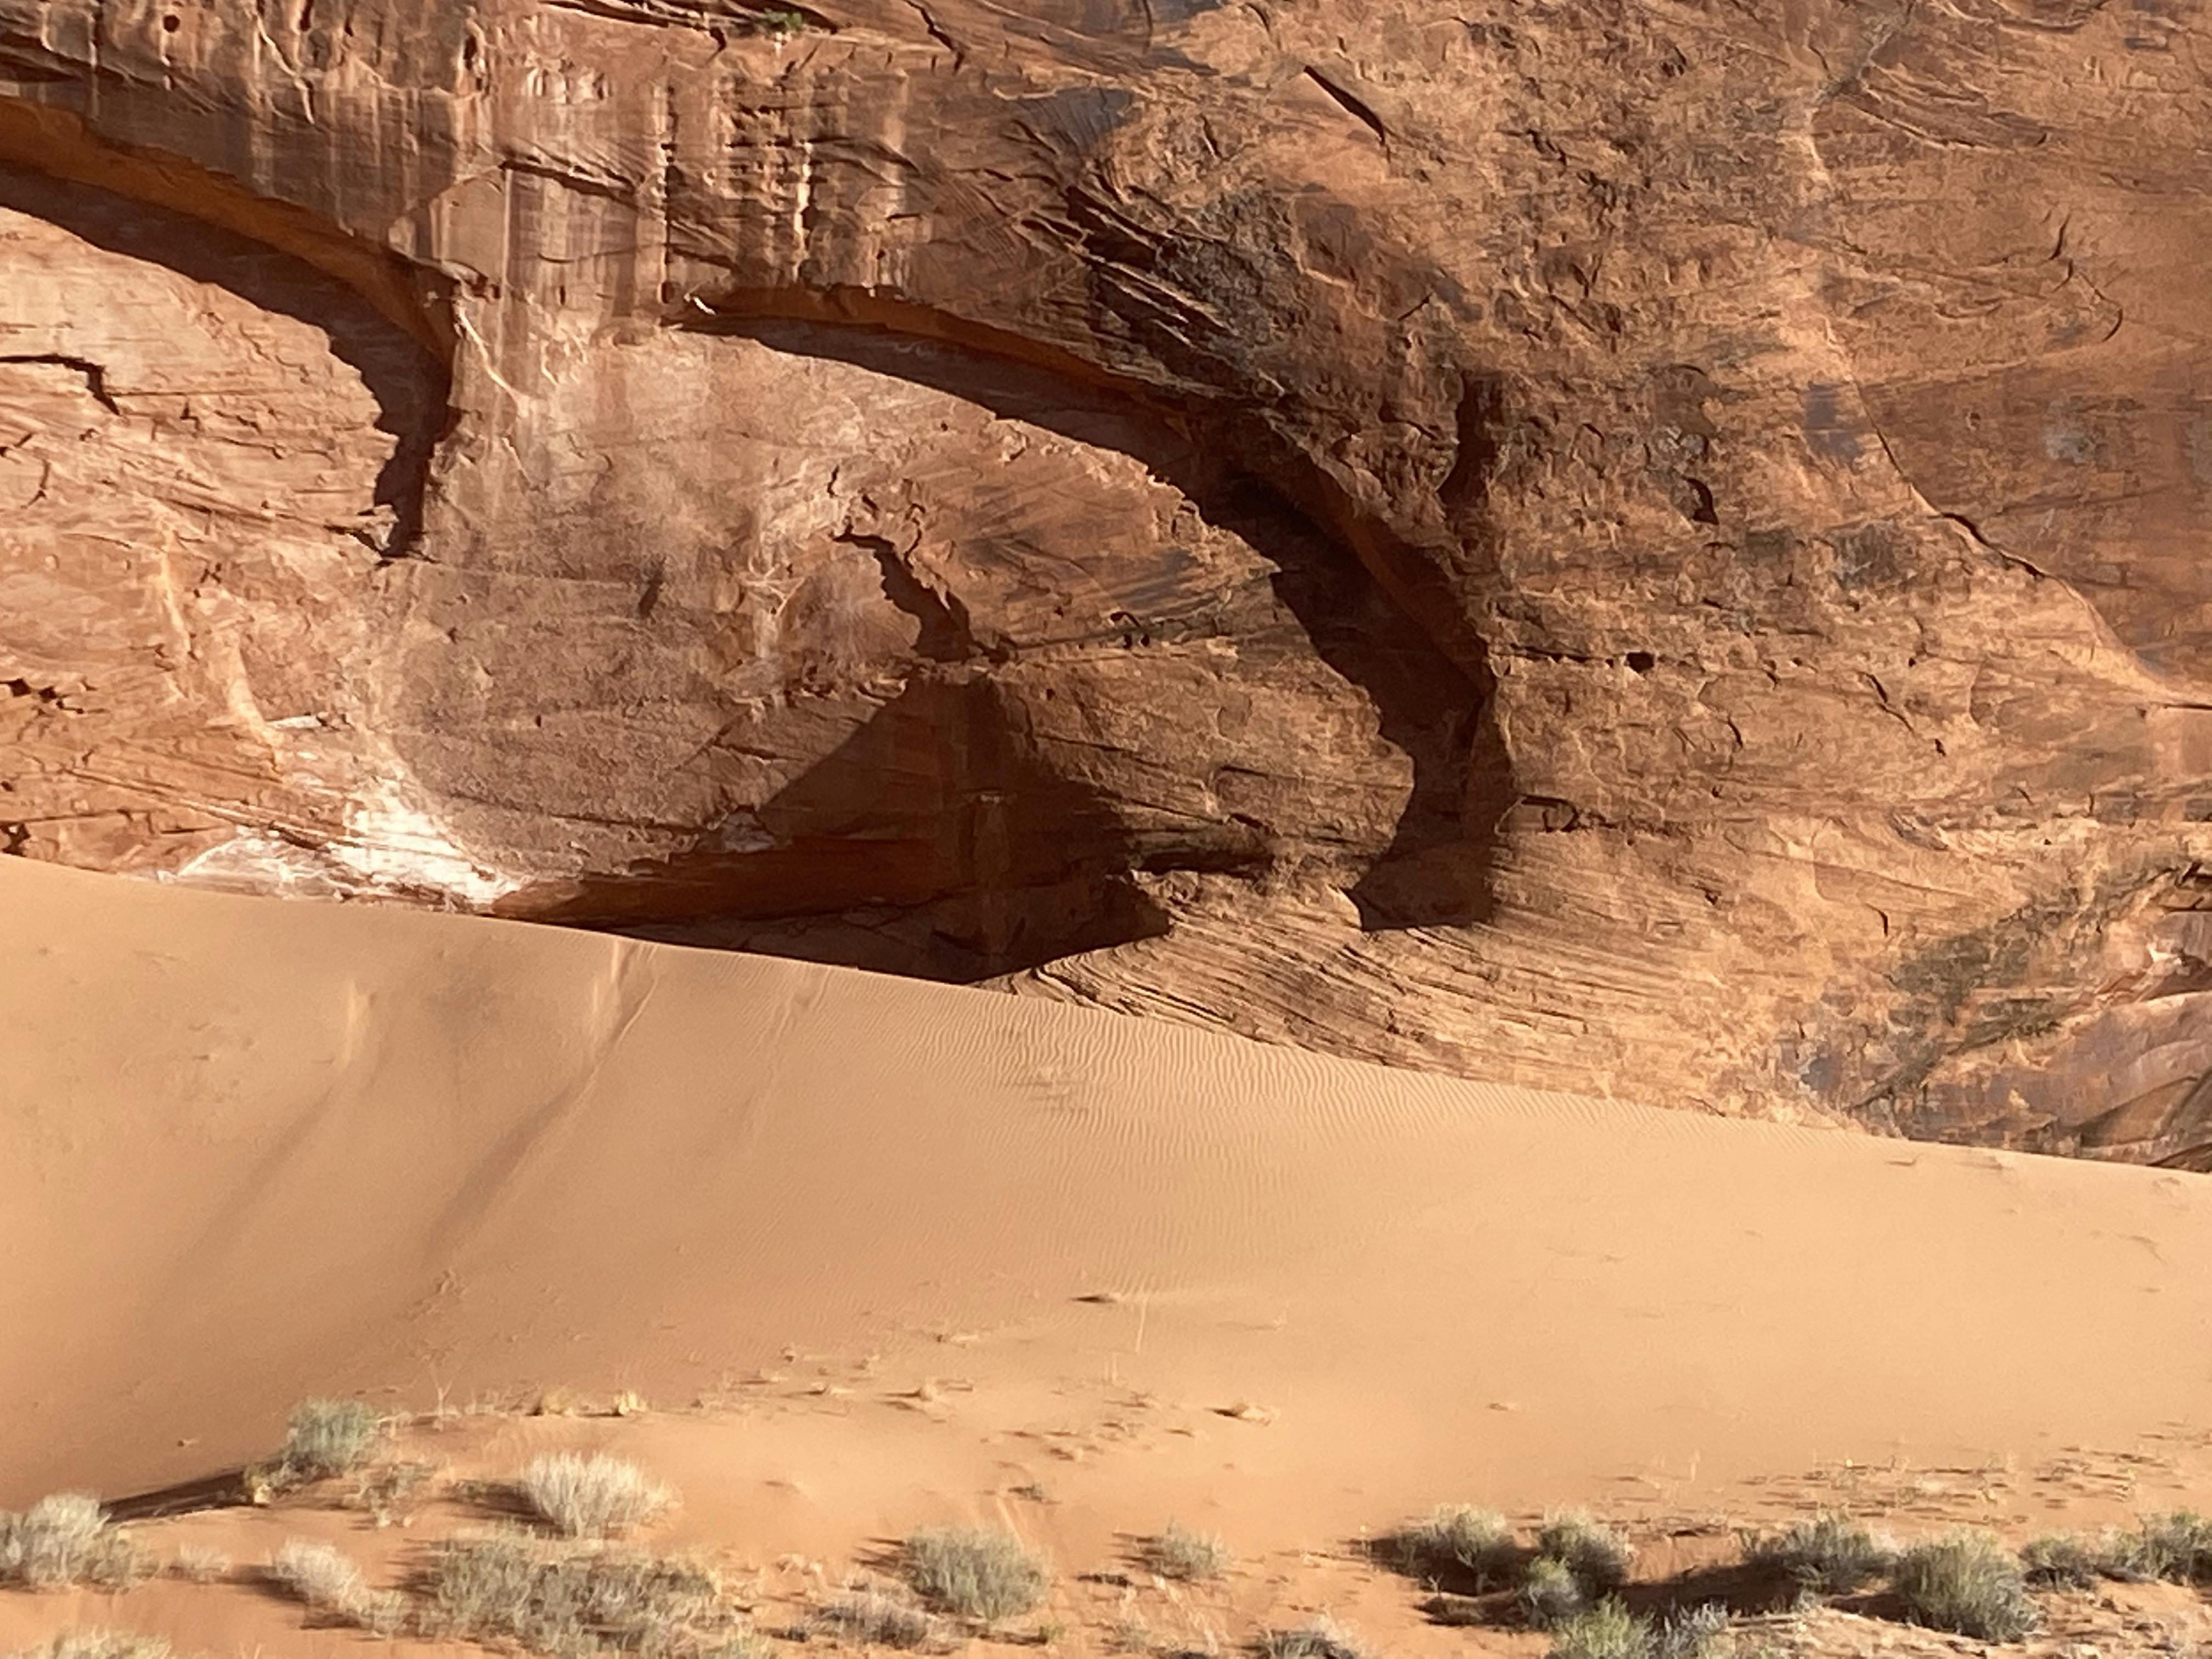 A desert sand dune under a massive red rock.